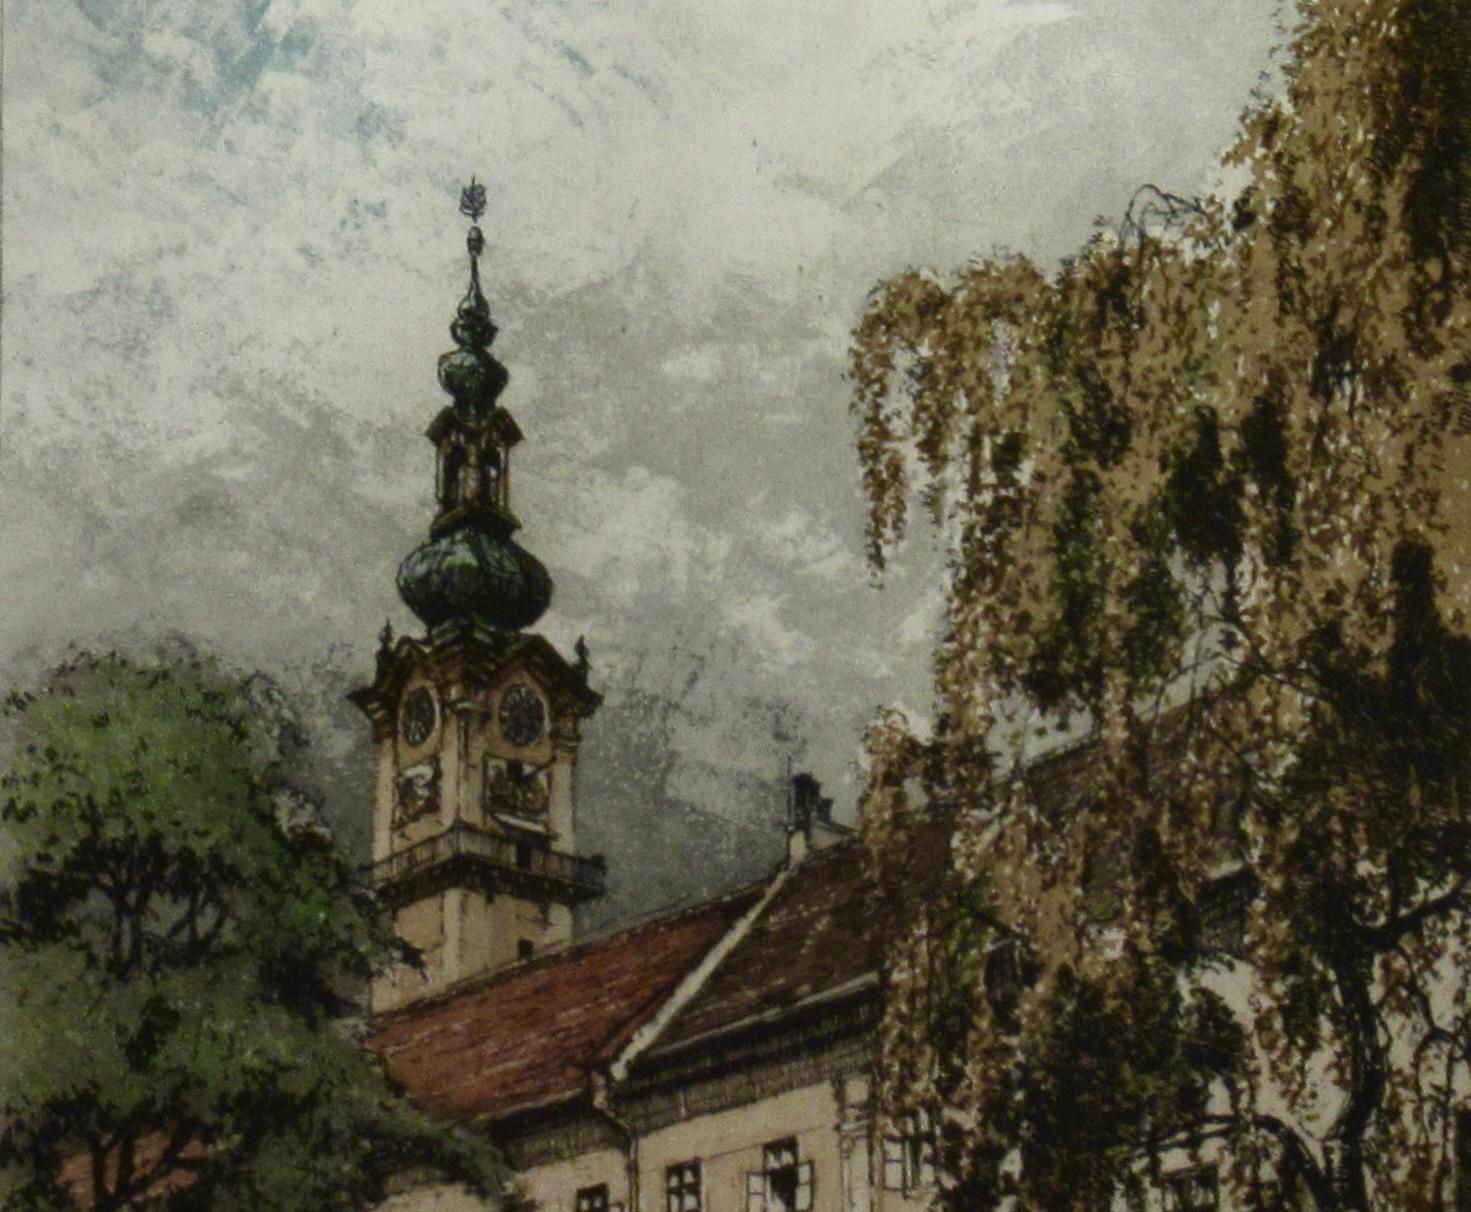 Linz Landhaus, Austria - Realist Print by Josef Eidenberger